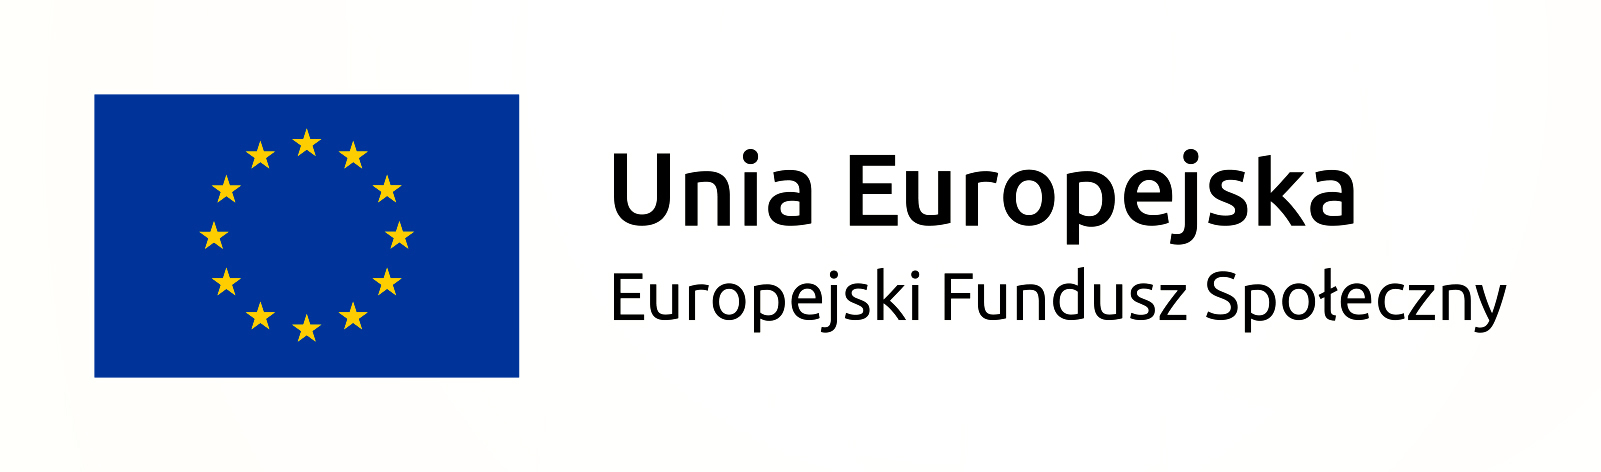 Unia Europejska. Europejski Fundusz Społeczny